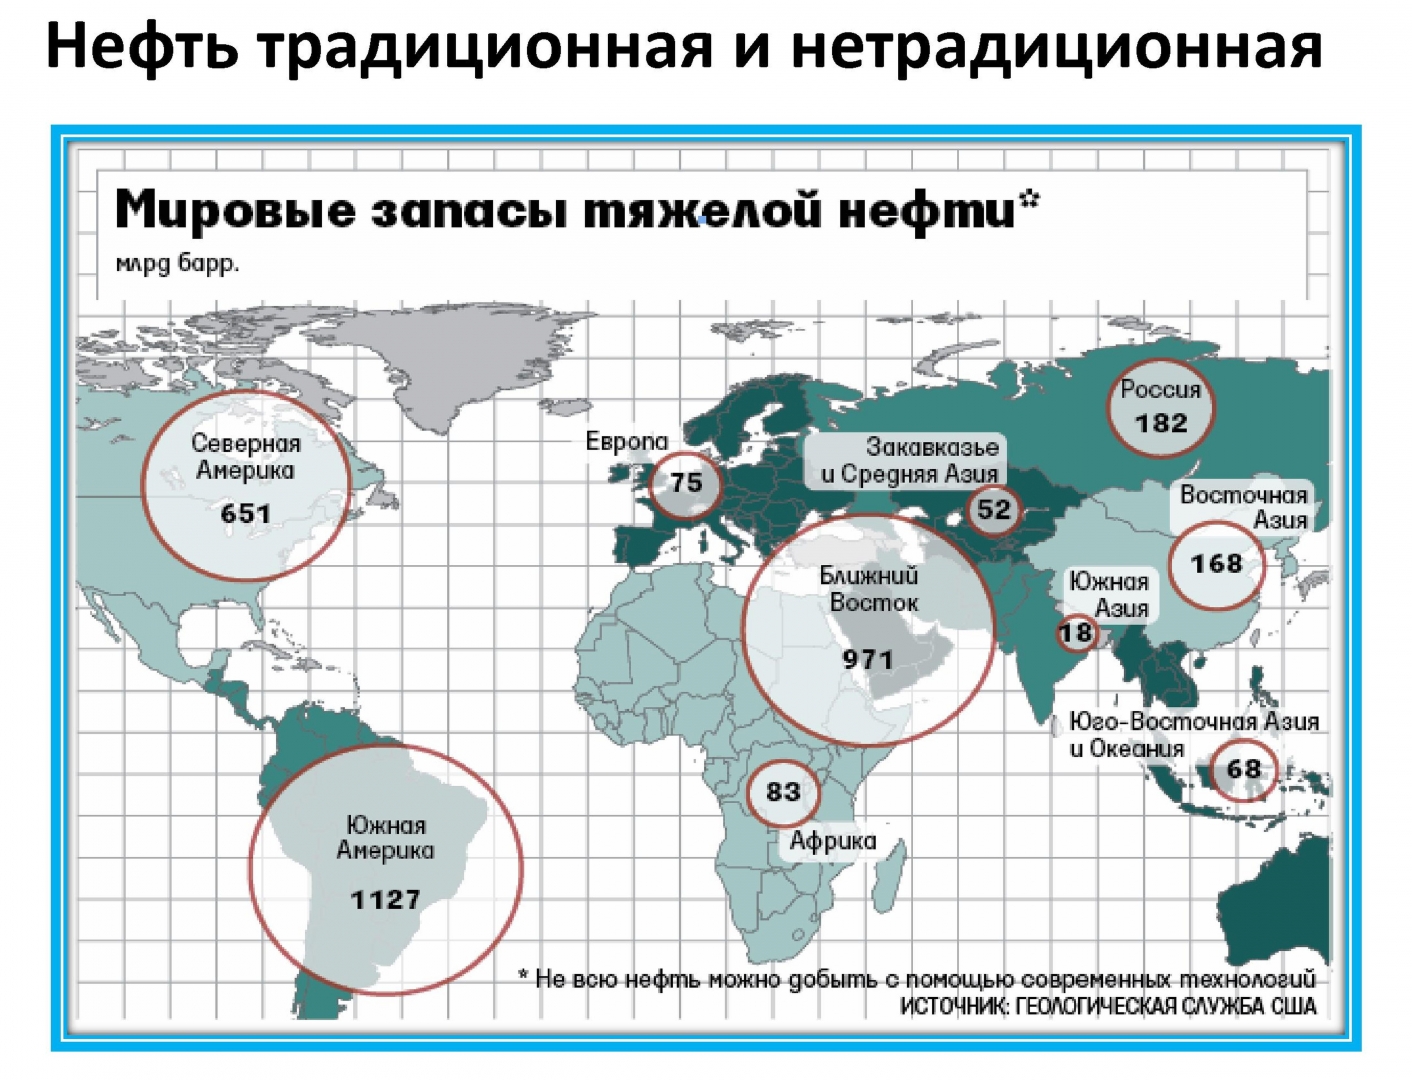 Крупнейшие запасы газа в мире. Карта запасов нефти и газа в мире. Распределение запасов битума и “тяжелой” нефти по странам. Залежи нефти в мире на карте.